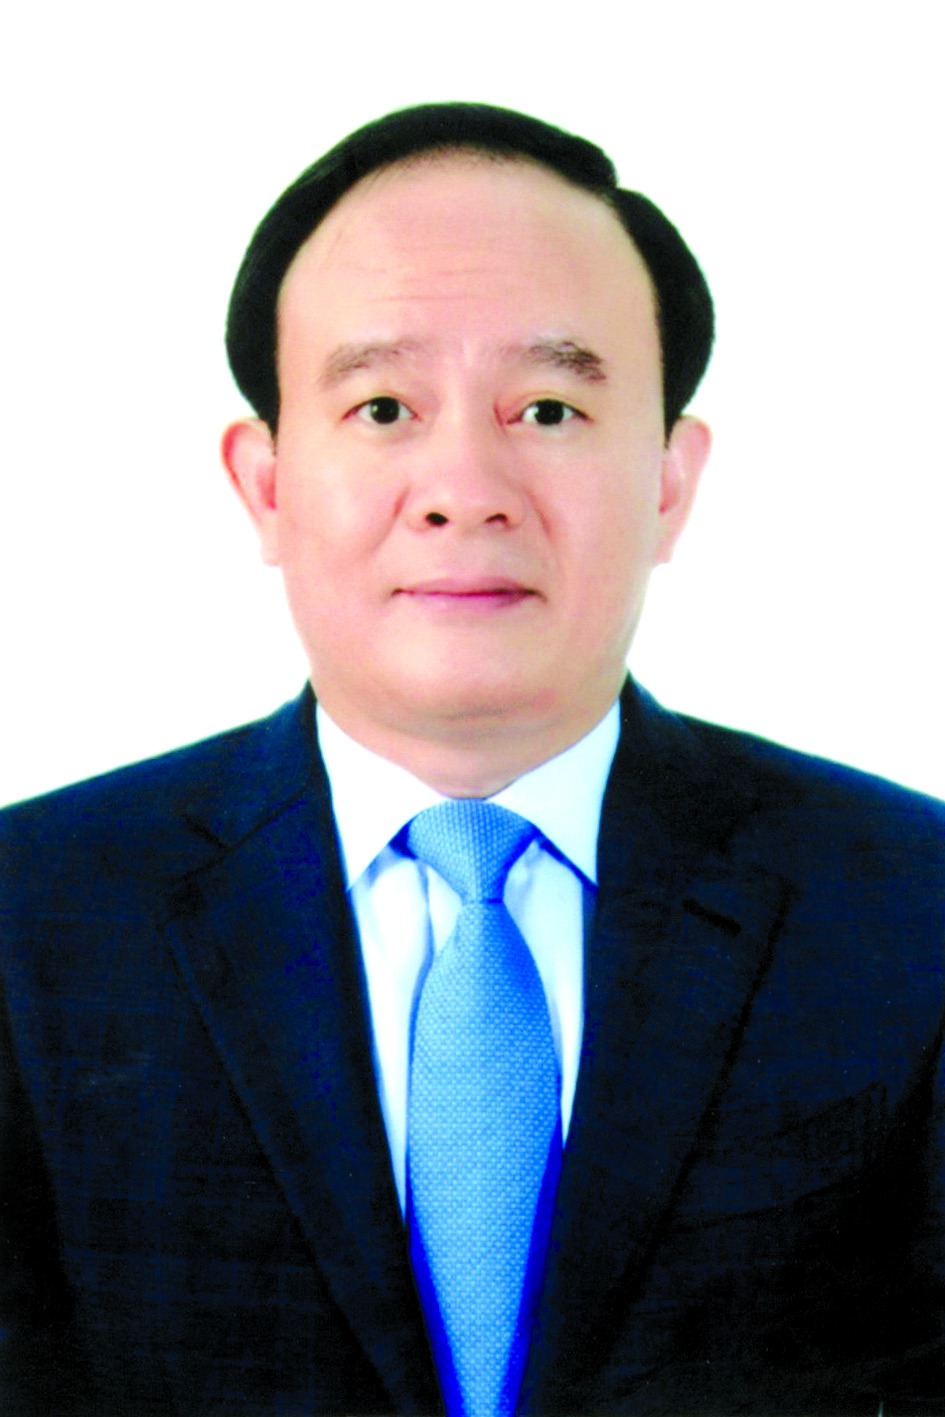 Chương trình hành động của Chủ tịch HĐND TP Hà Nội Nguyễn Ngọc Tuấn, ứng cử viên đại biểu HĐND TP Hà Nội nhiệm kỳ 2021 - 2026 - Ảnh 1